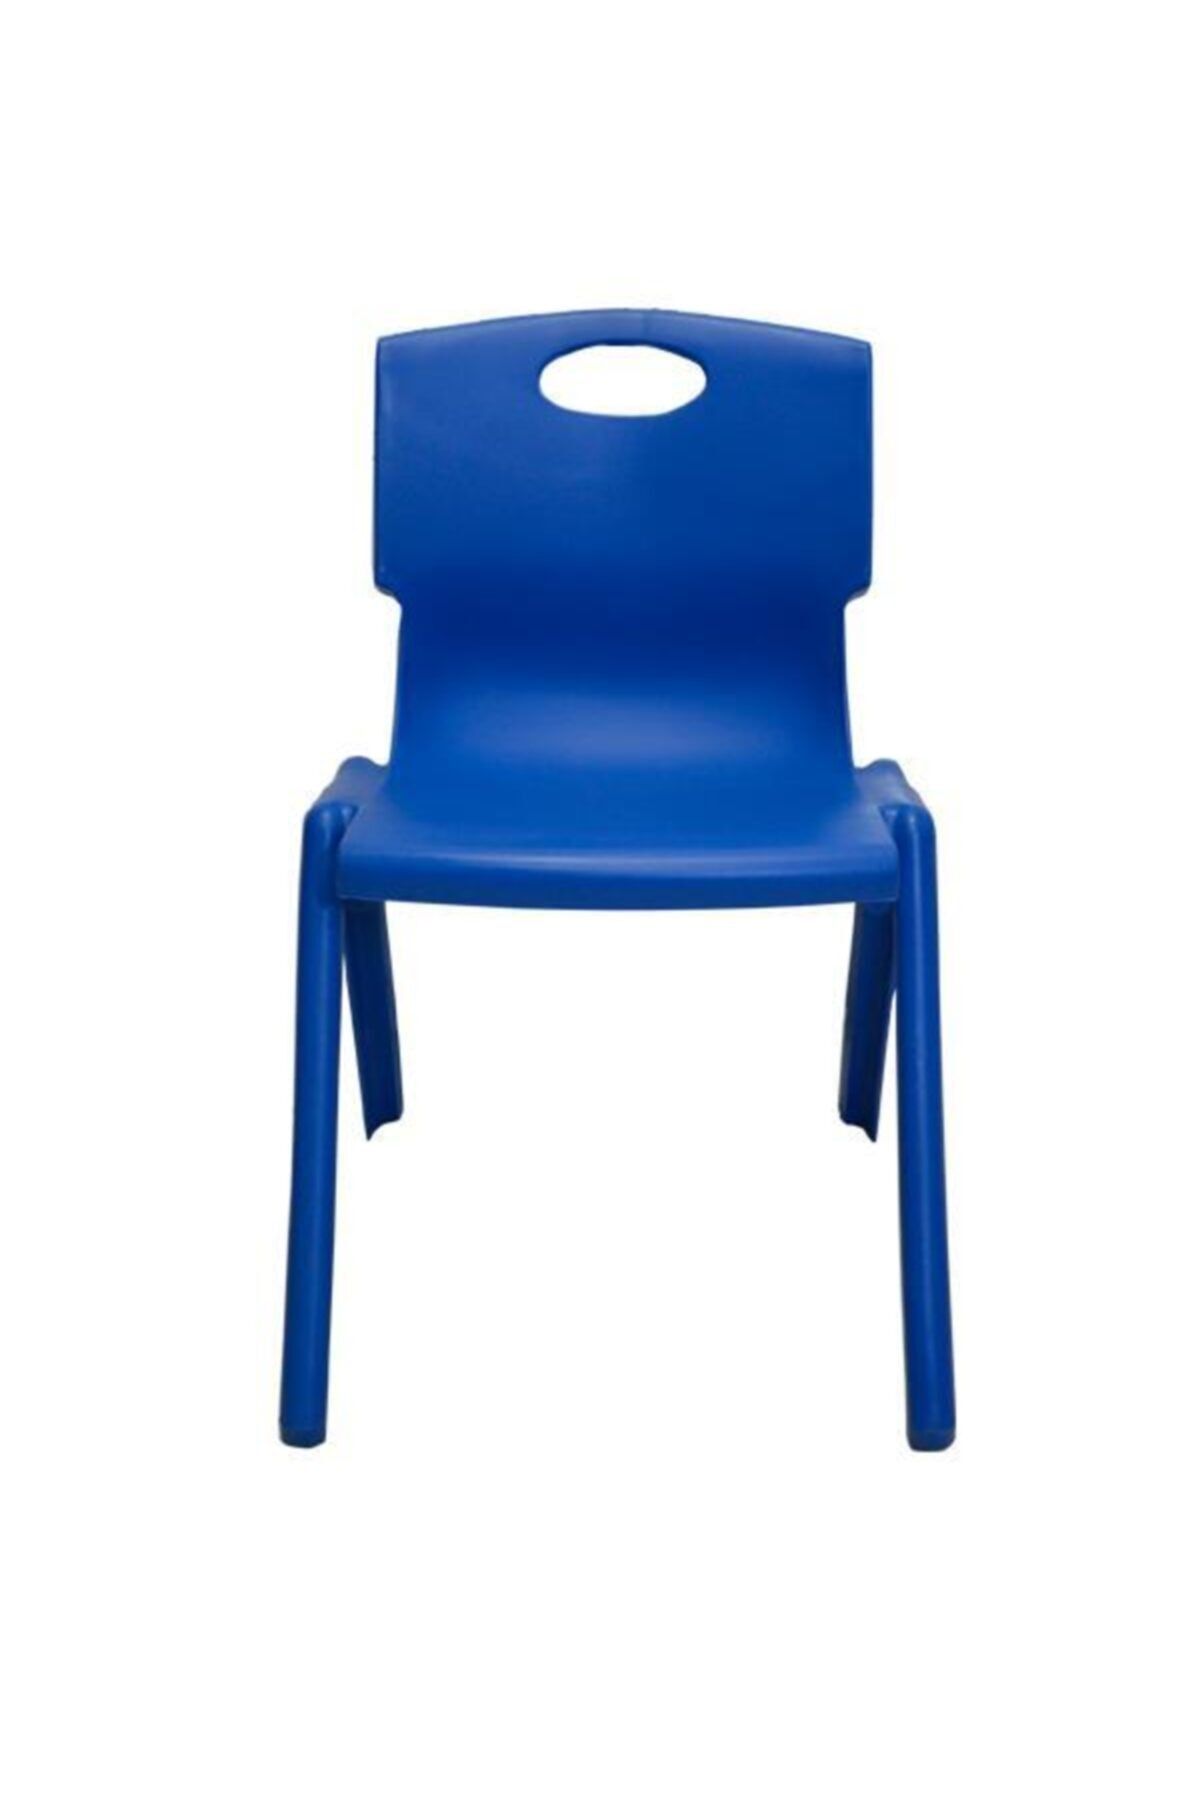 Temel Mavi Kırılmaz Çocuk Sandalyesi - Kreş Ve Anaokulu Sandalyesi 1 Adet